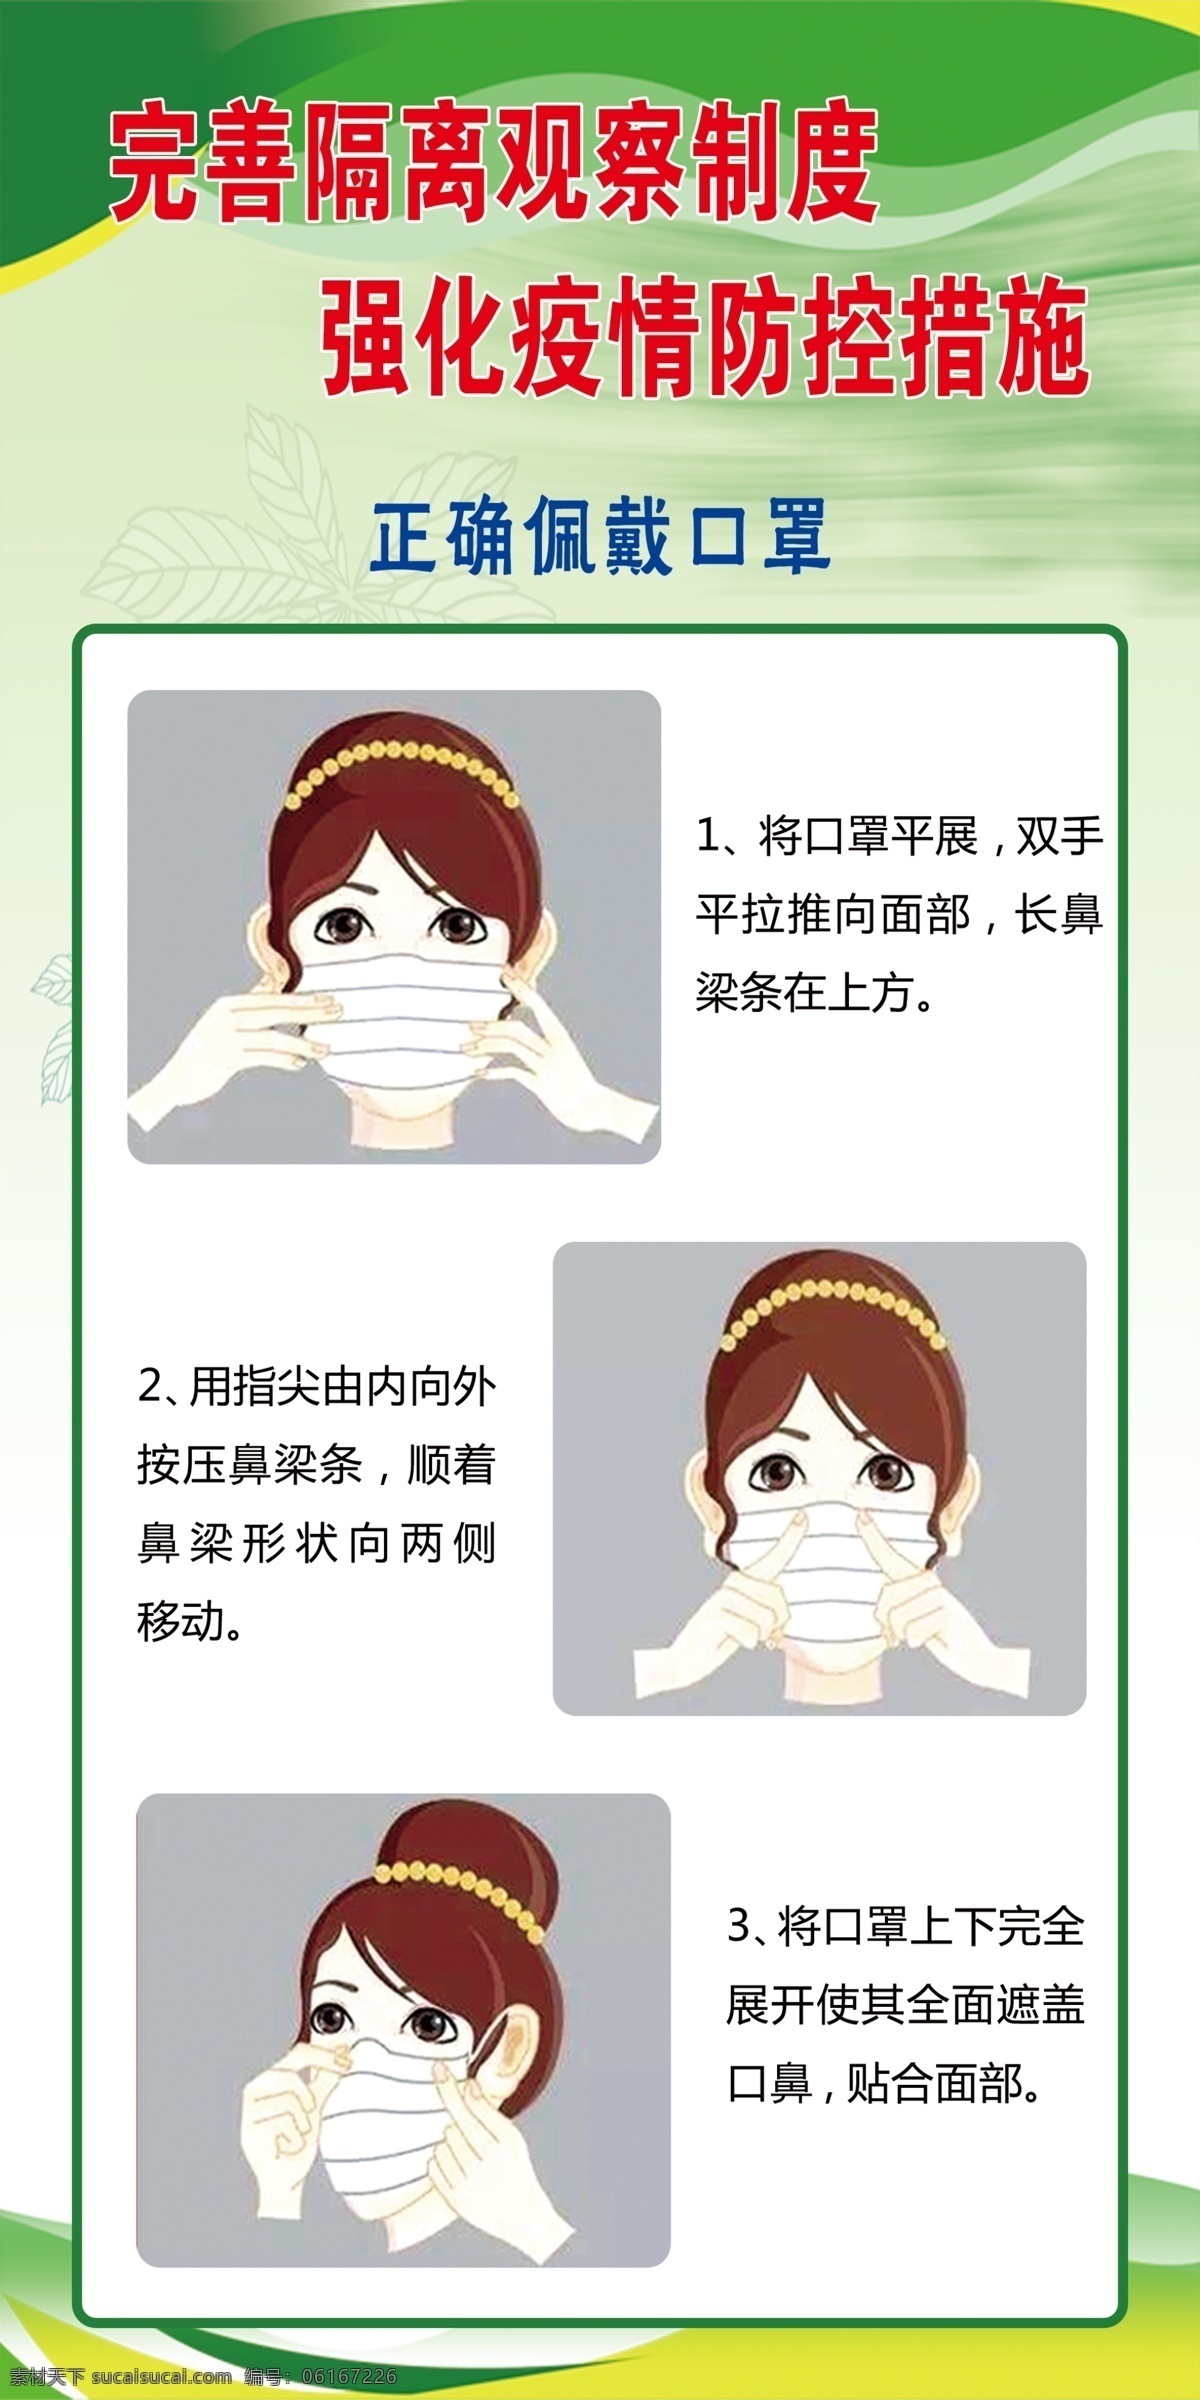 正确佩戴口罩 戴口罩方法 抗击疫情 疫情防控 如何选择口罩 口罩佩戴原则 个人防护指南